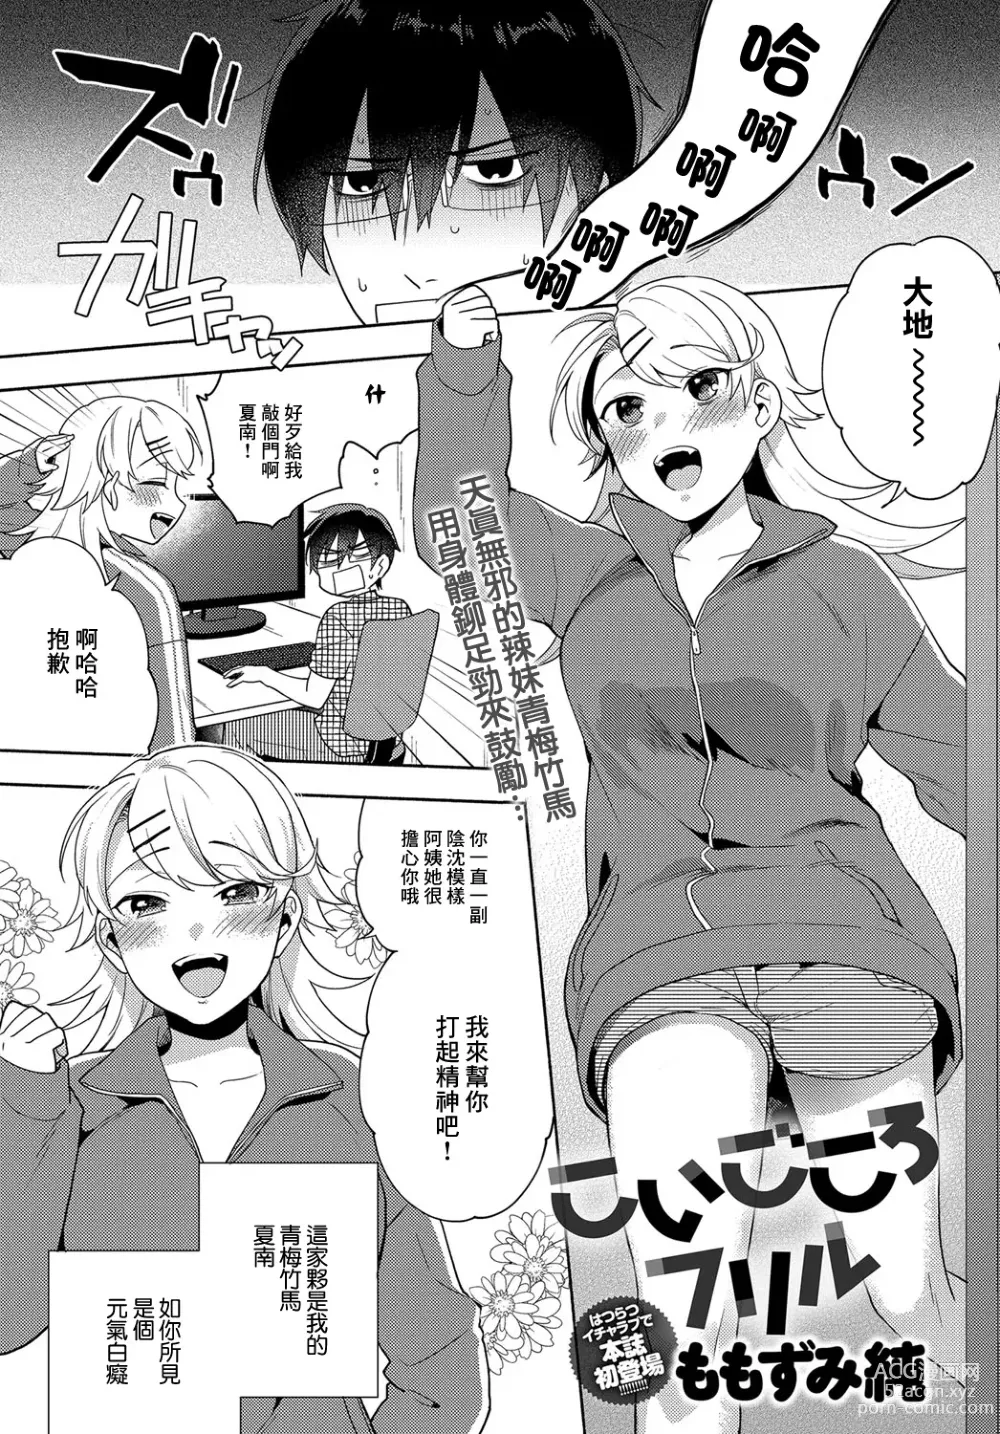 Page 1 of manga Koigokoro Frill